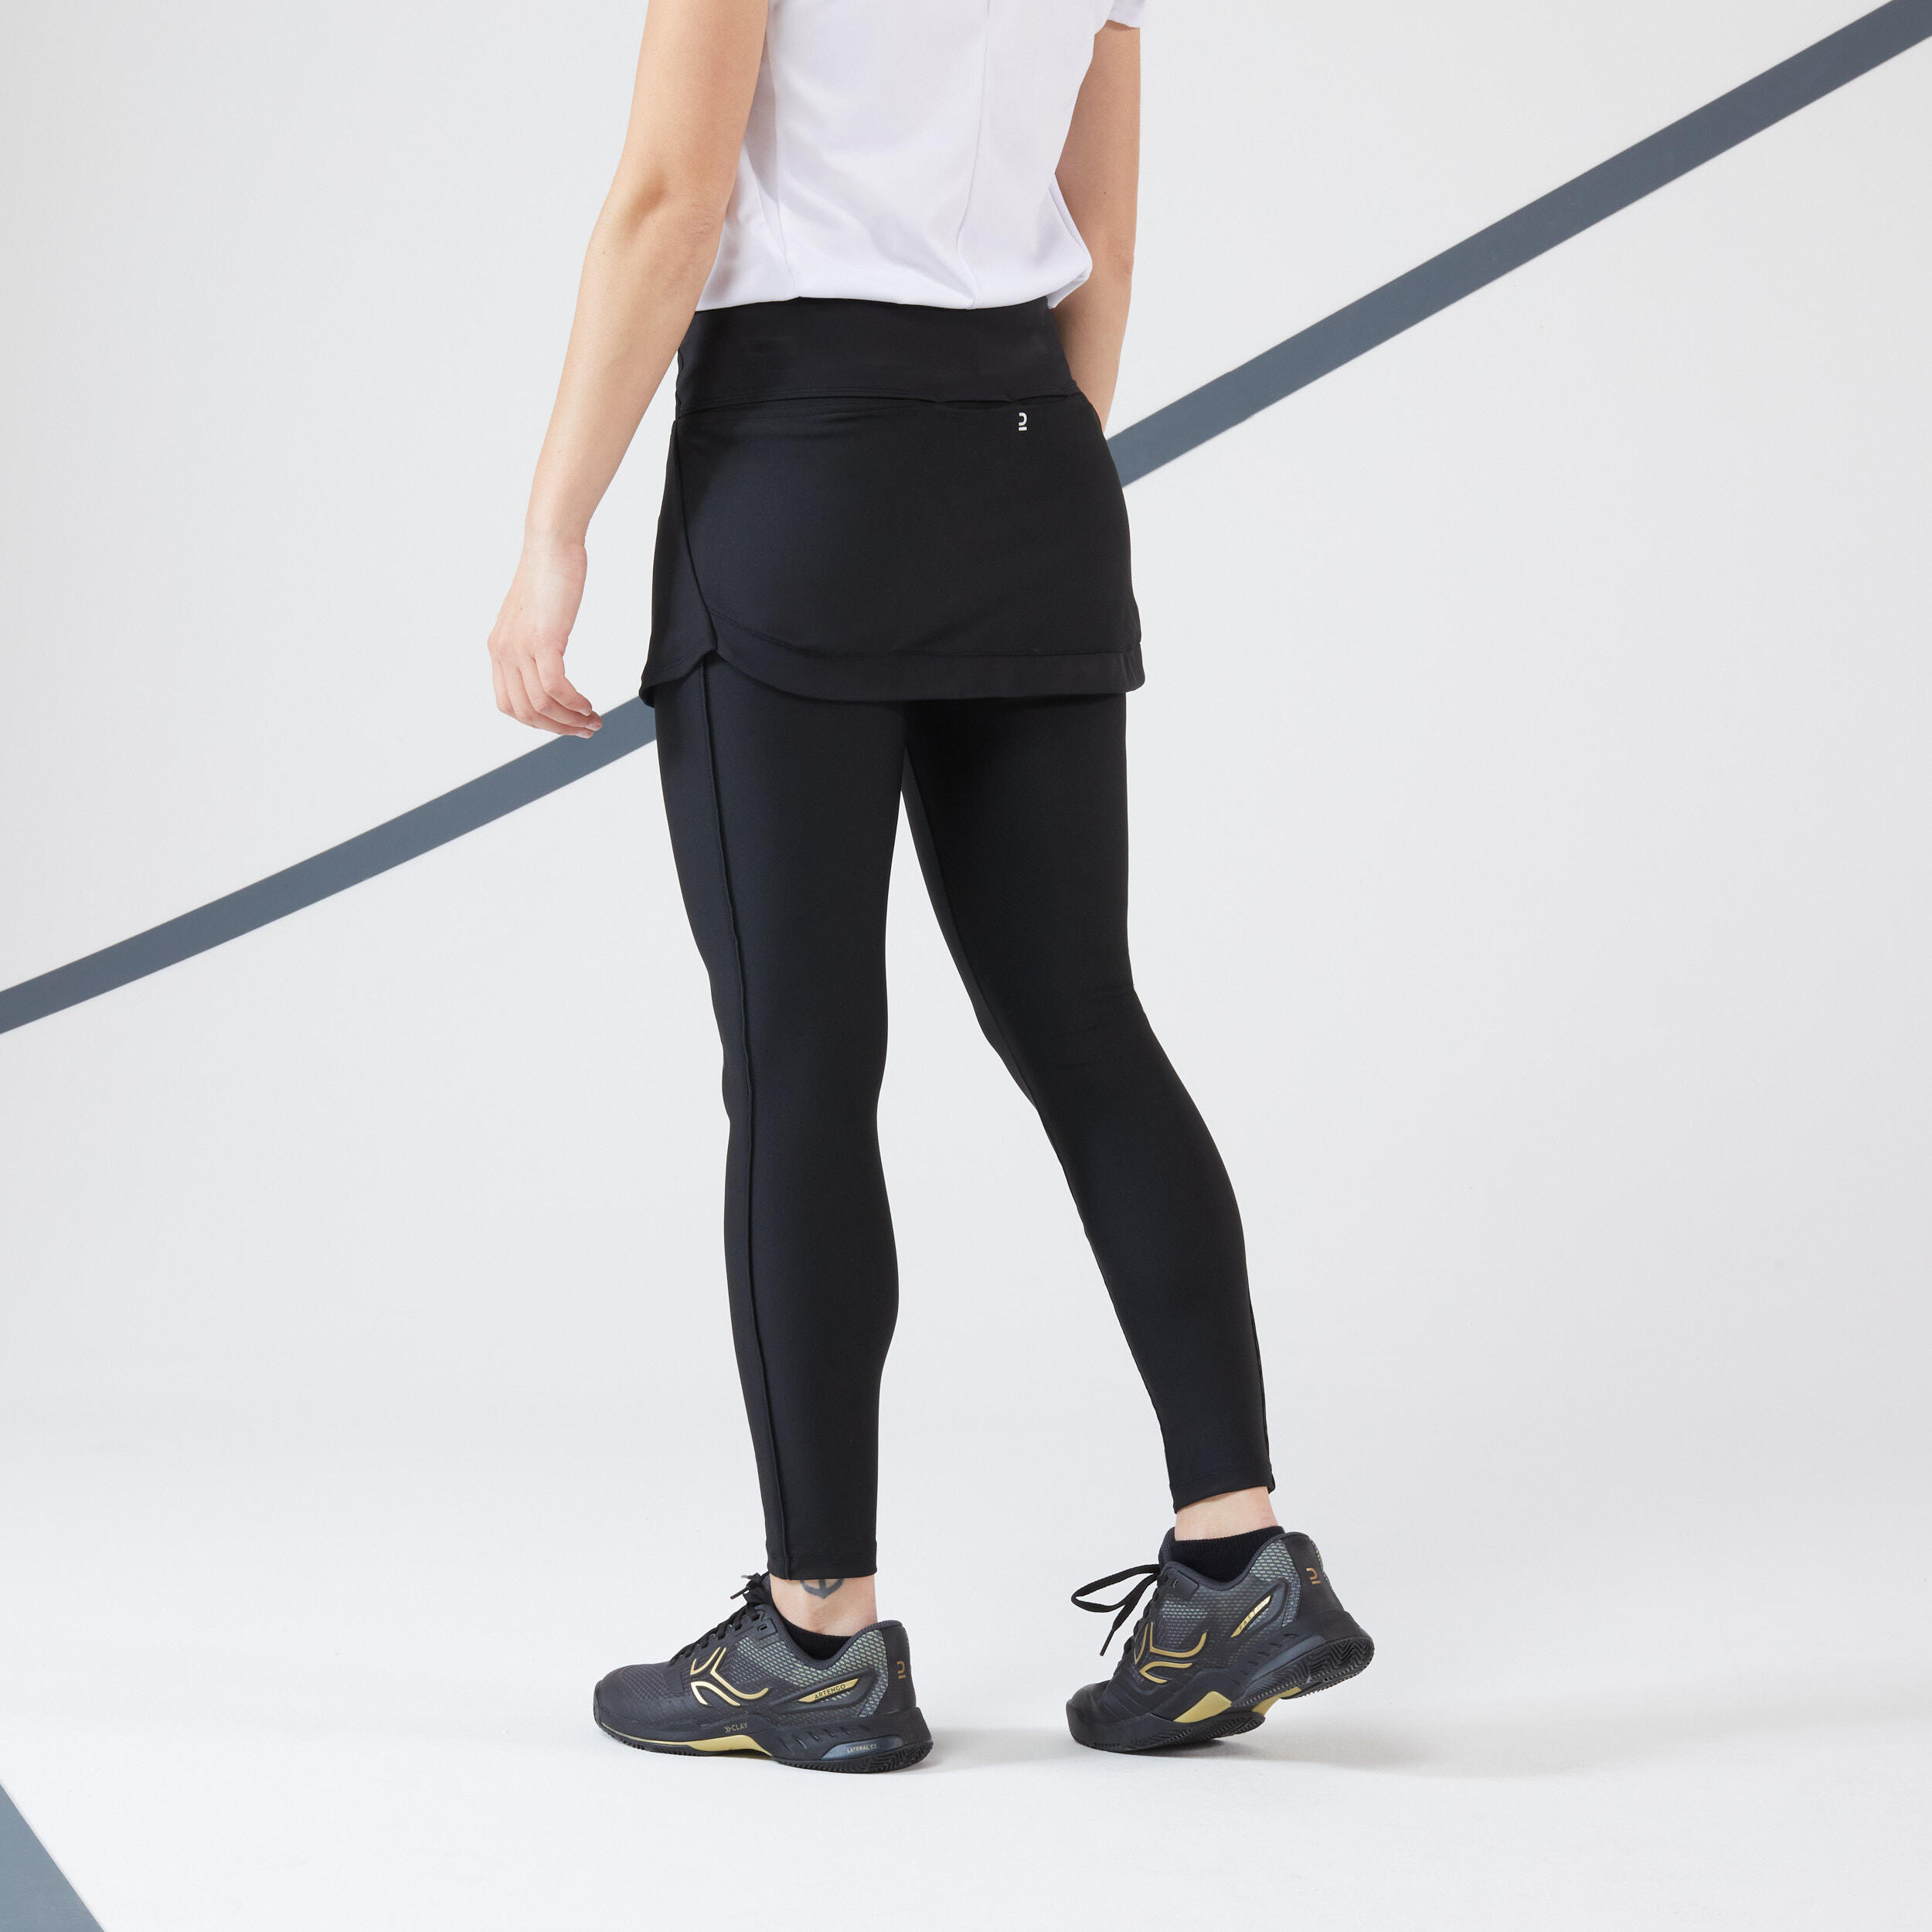 Women's Tennis Hip Ball Skirt + Leggings Dry - Black 6/6